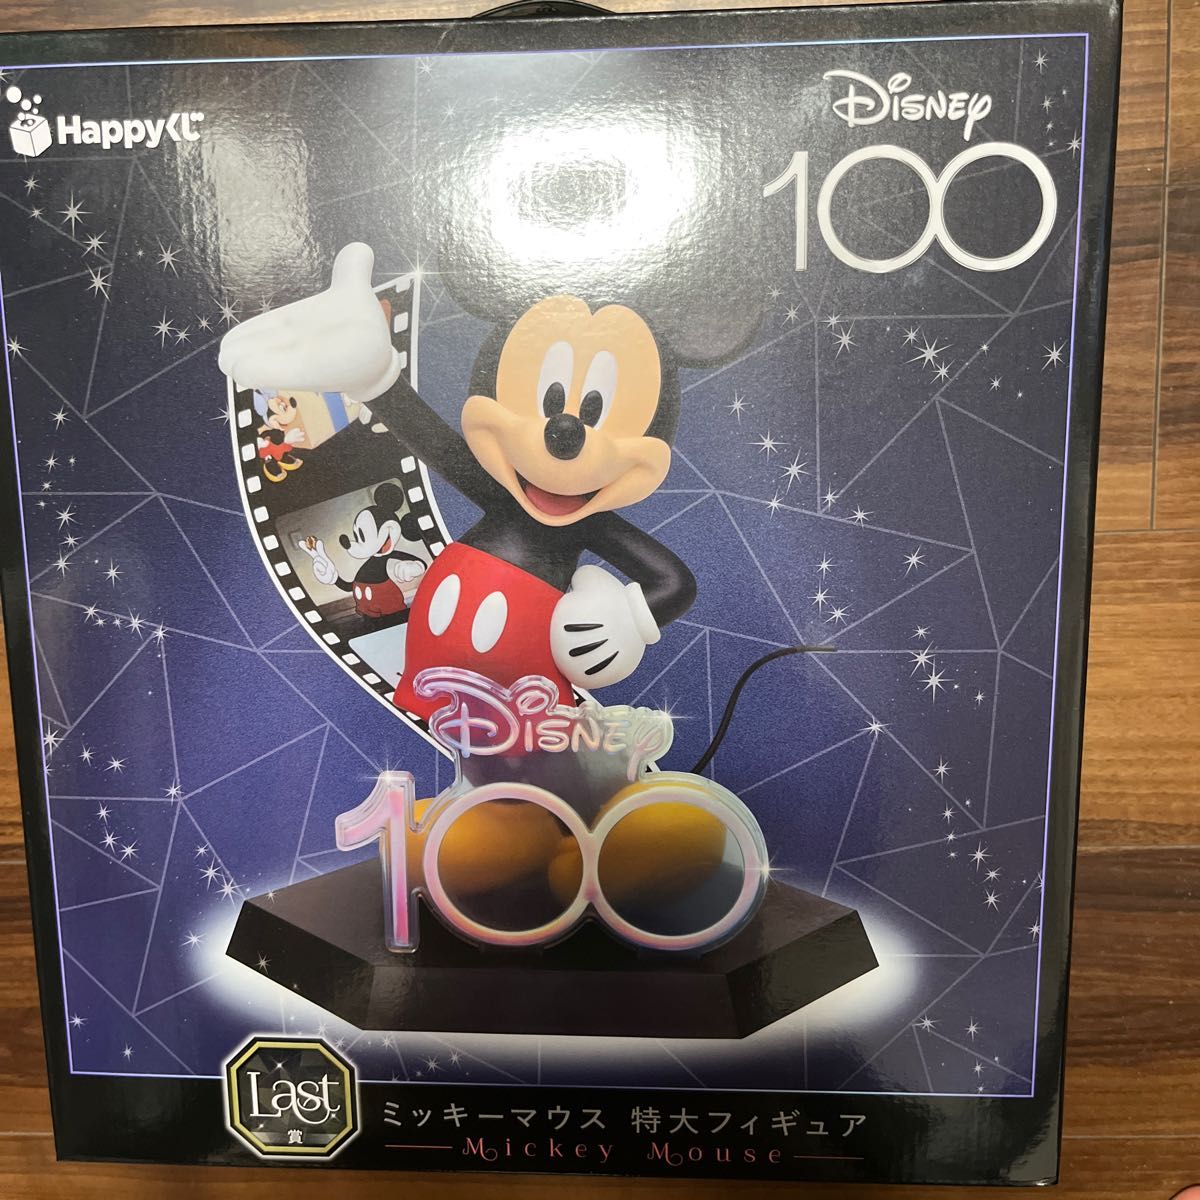 通販企業 ハッピーくじ ディズニー100 ラストワン賞(ミッキーマウス